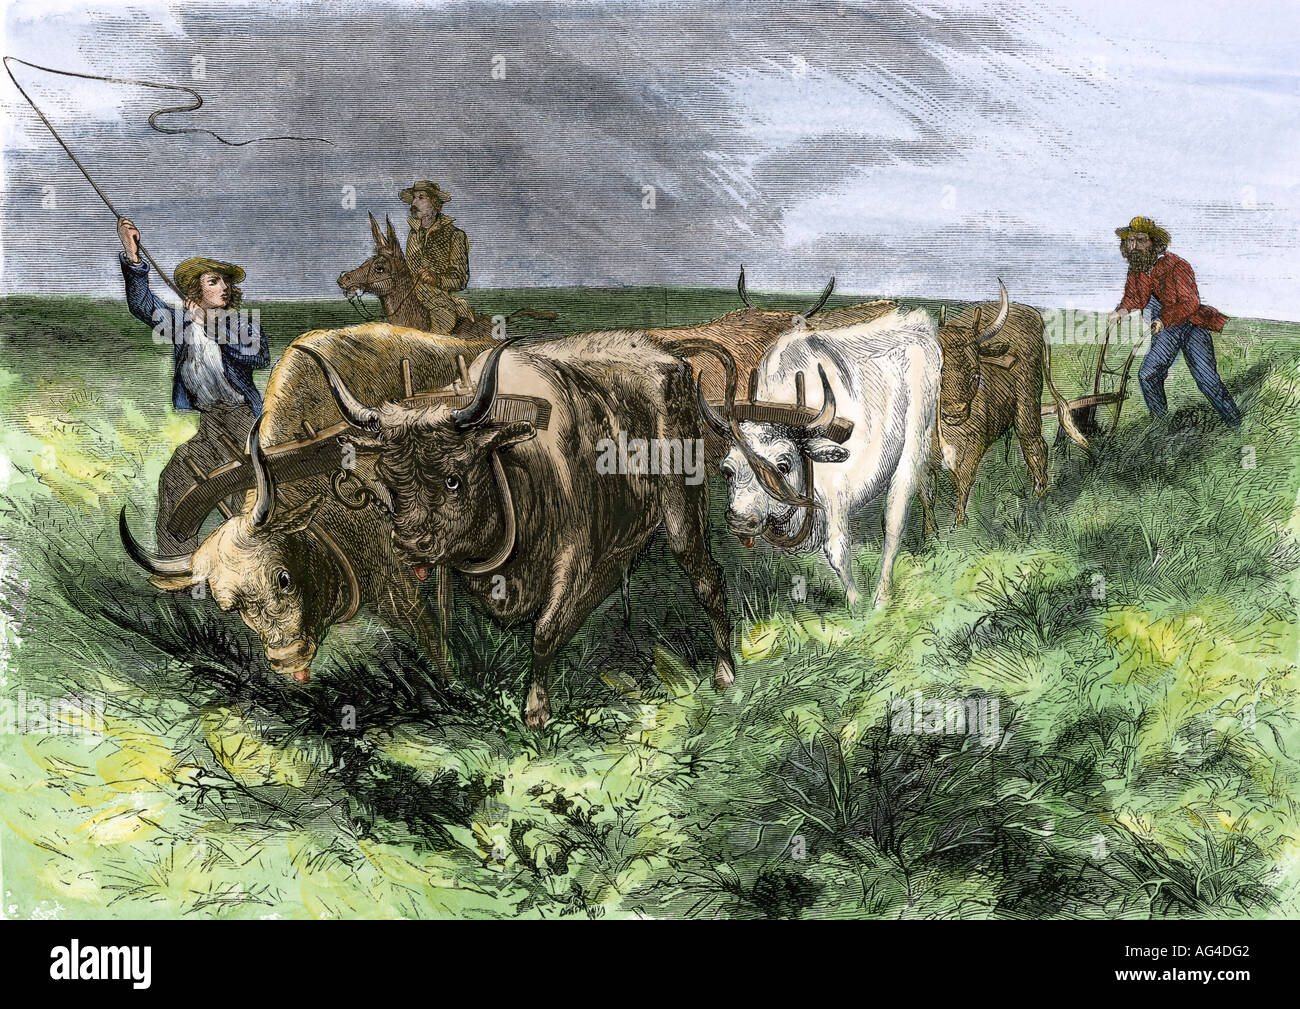 Les homesteaders en utilisant les équipes de boeuf pour labourer les prairies de l'ouest du Mississippi, années 1800. À la main, gravure sur bois Banque D'Images